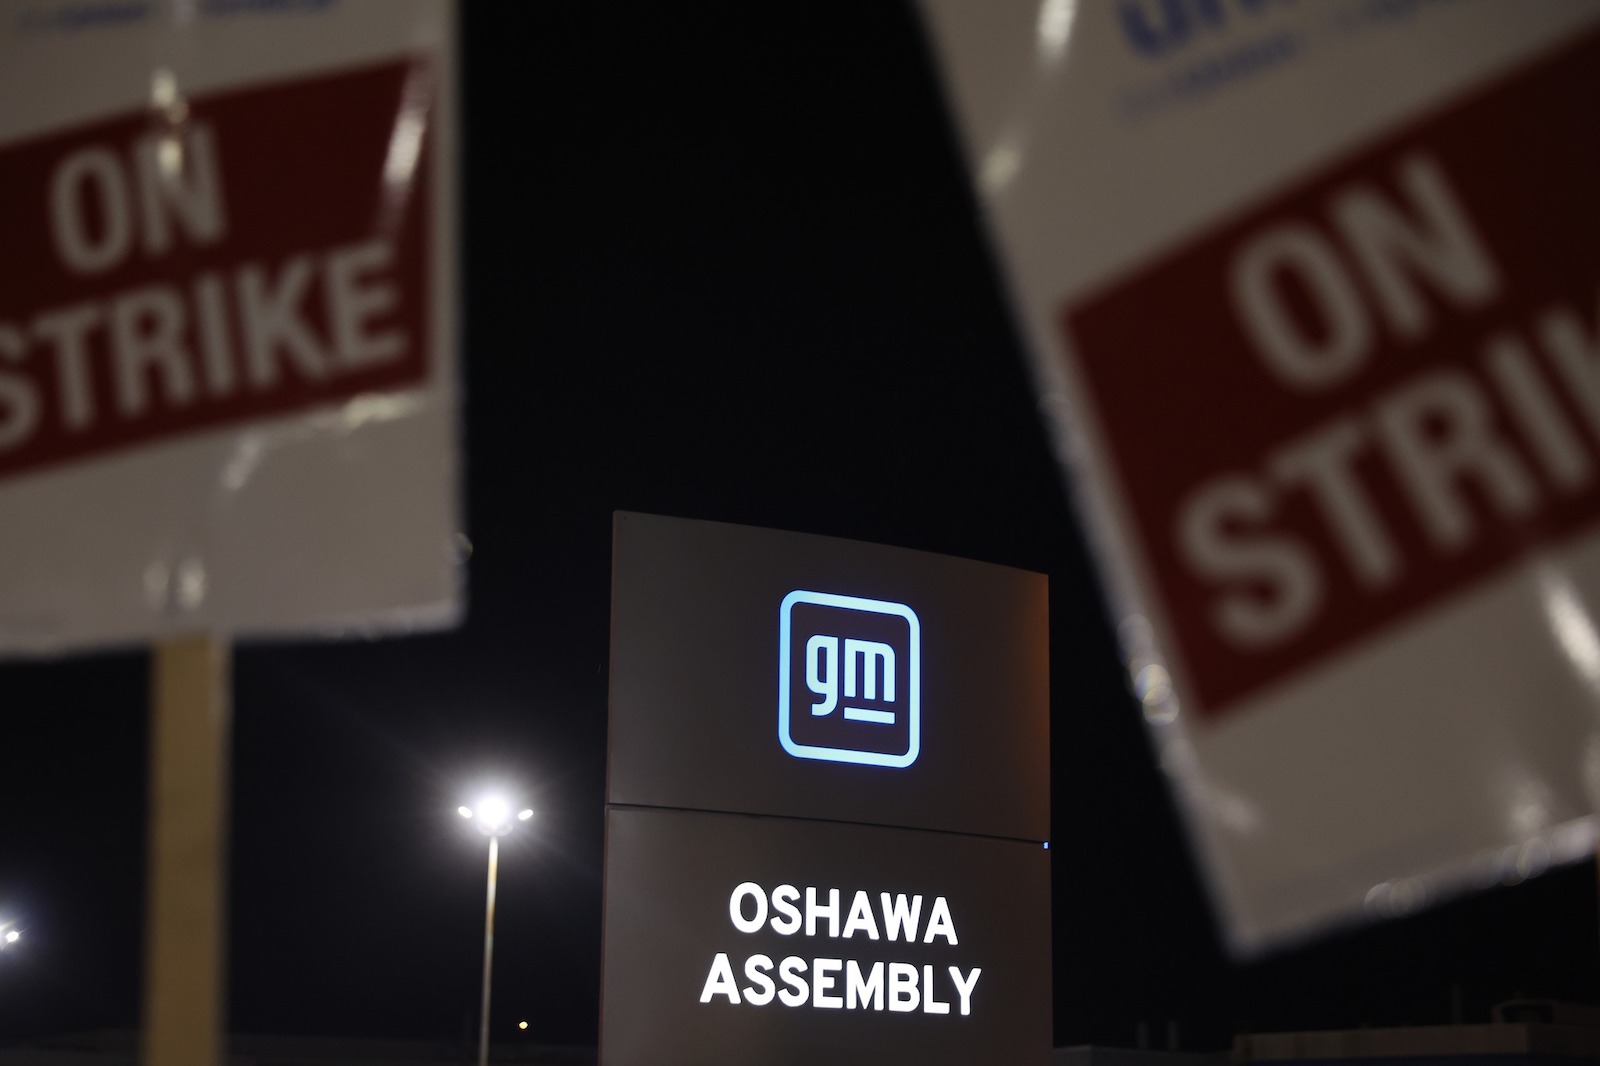 GM Oshawa and picket signs